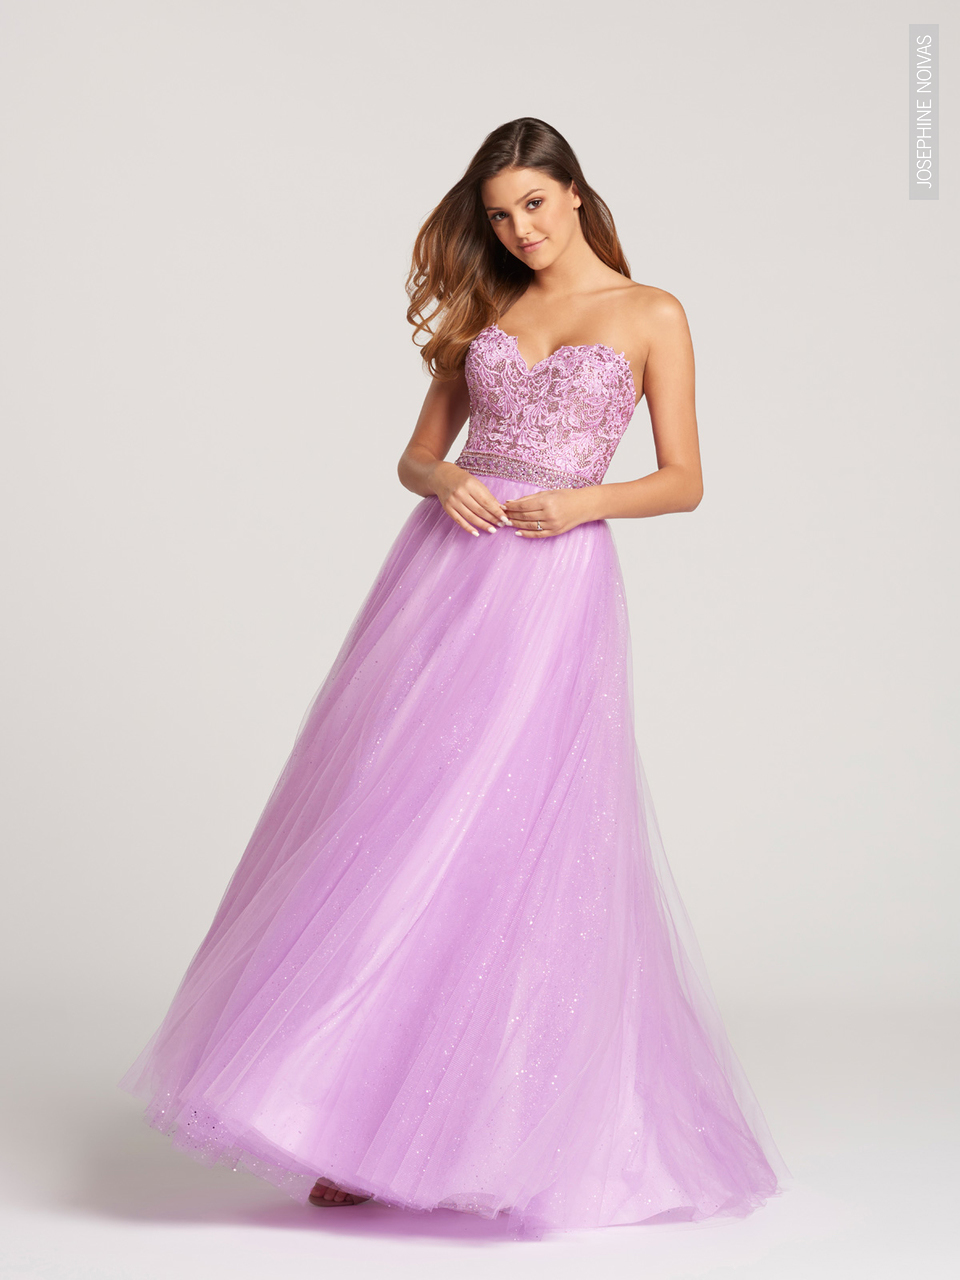 Vestido de Debutante na cor lilás